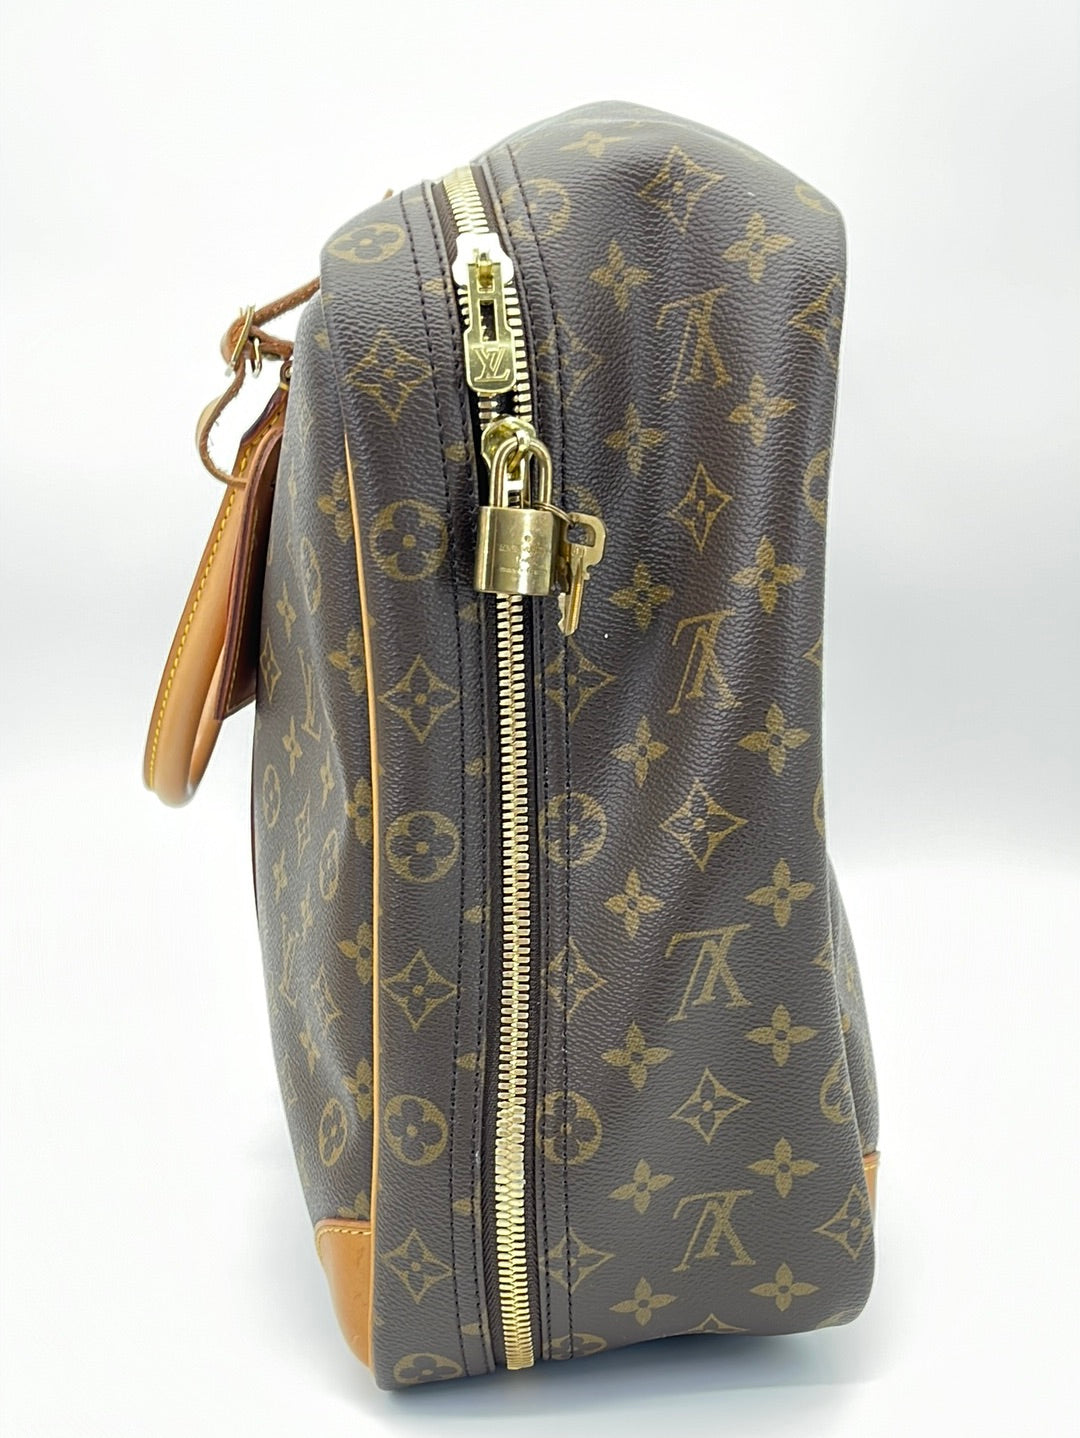 Louis Vuitton The Sirius Travel Bag Charm Key Chain – Chic